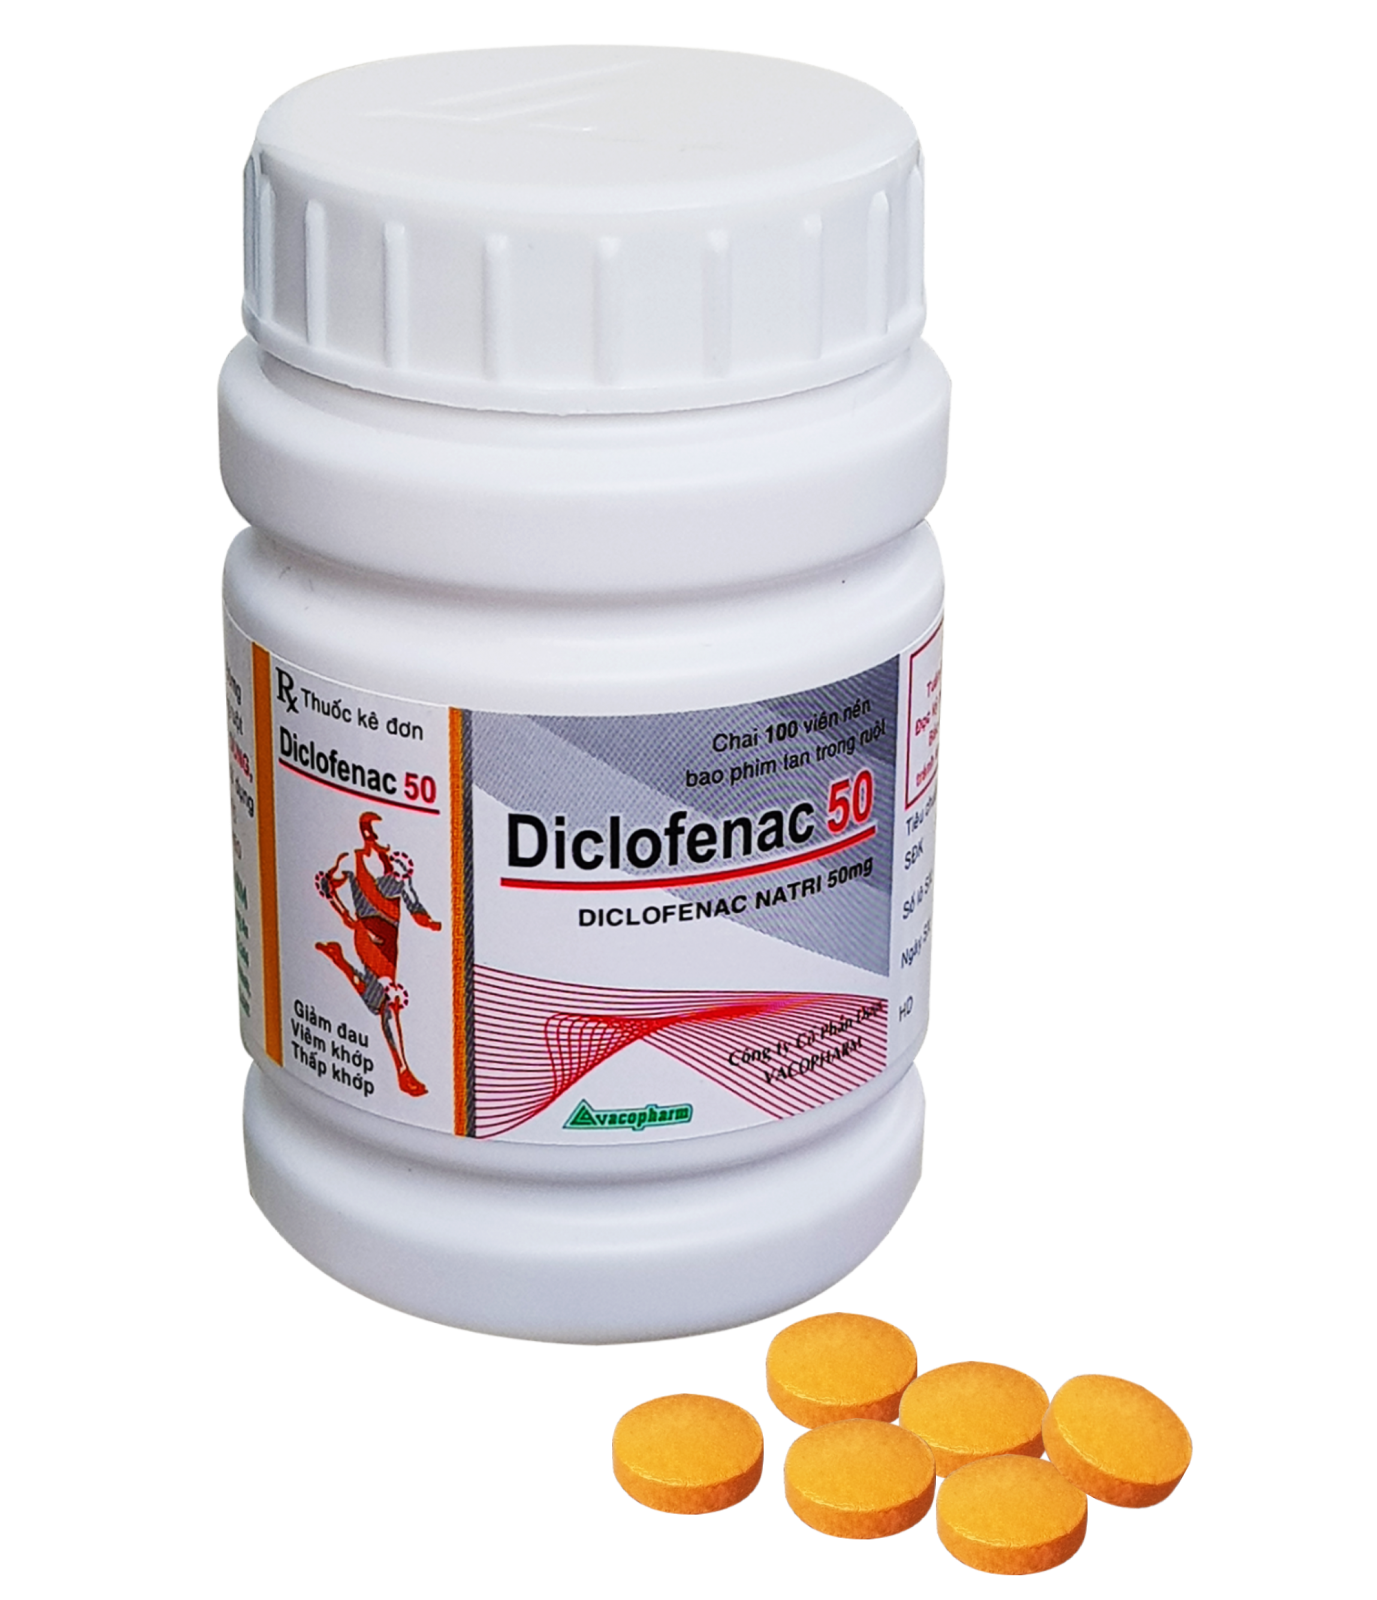 Tác dụng và liều dùng của thuốc diclofenac 50 hiệu quả và an toàn